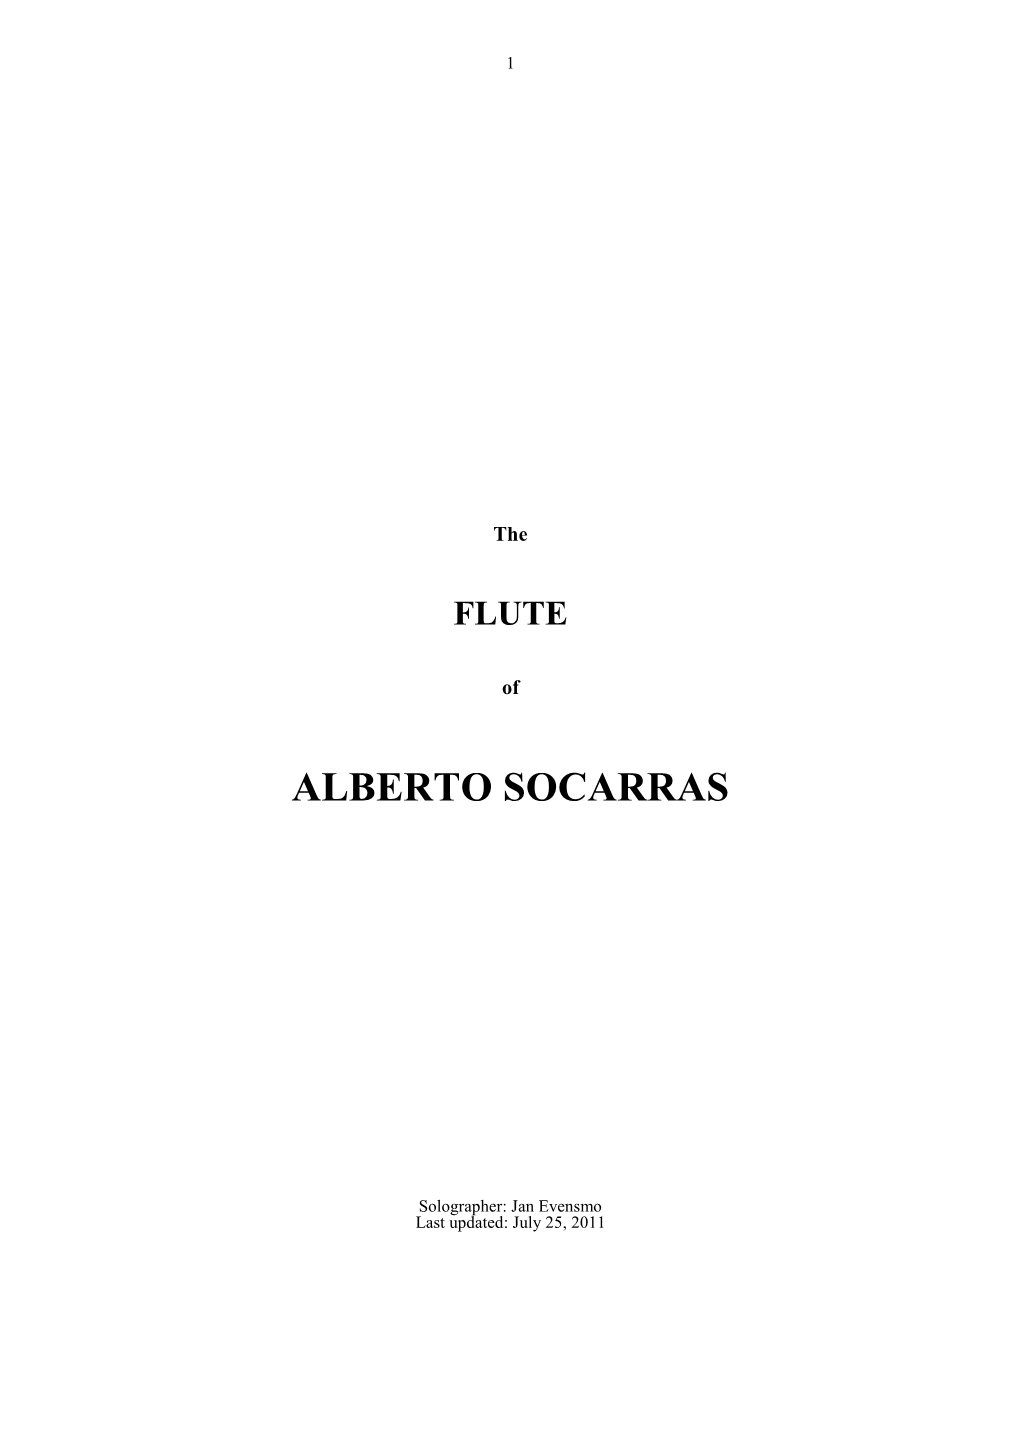 Download the FLUTE of ALBERTO SOCARRAS